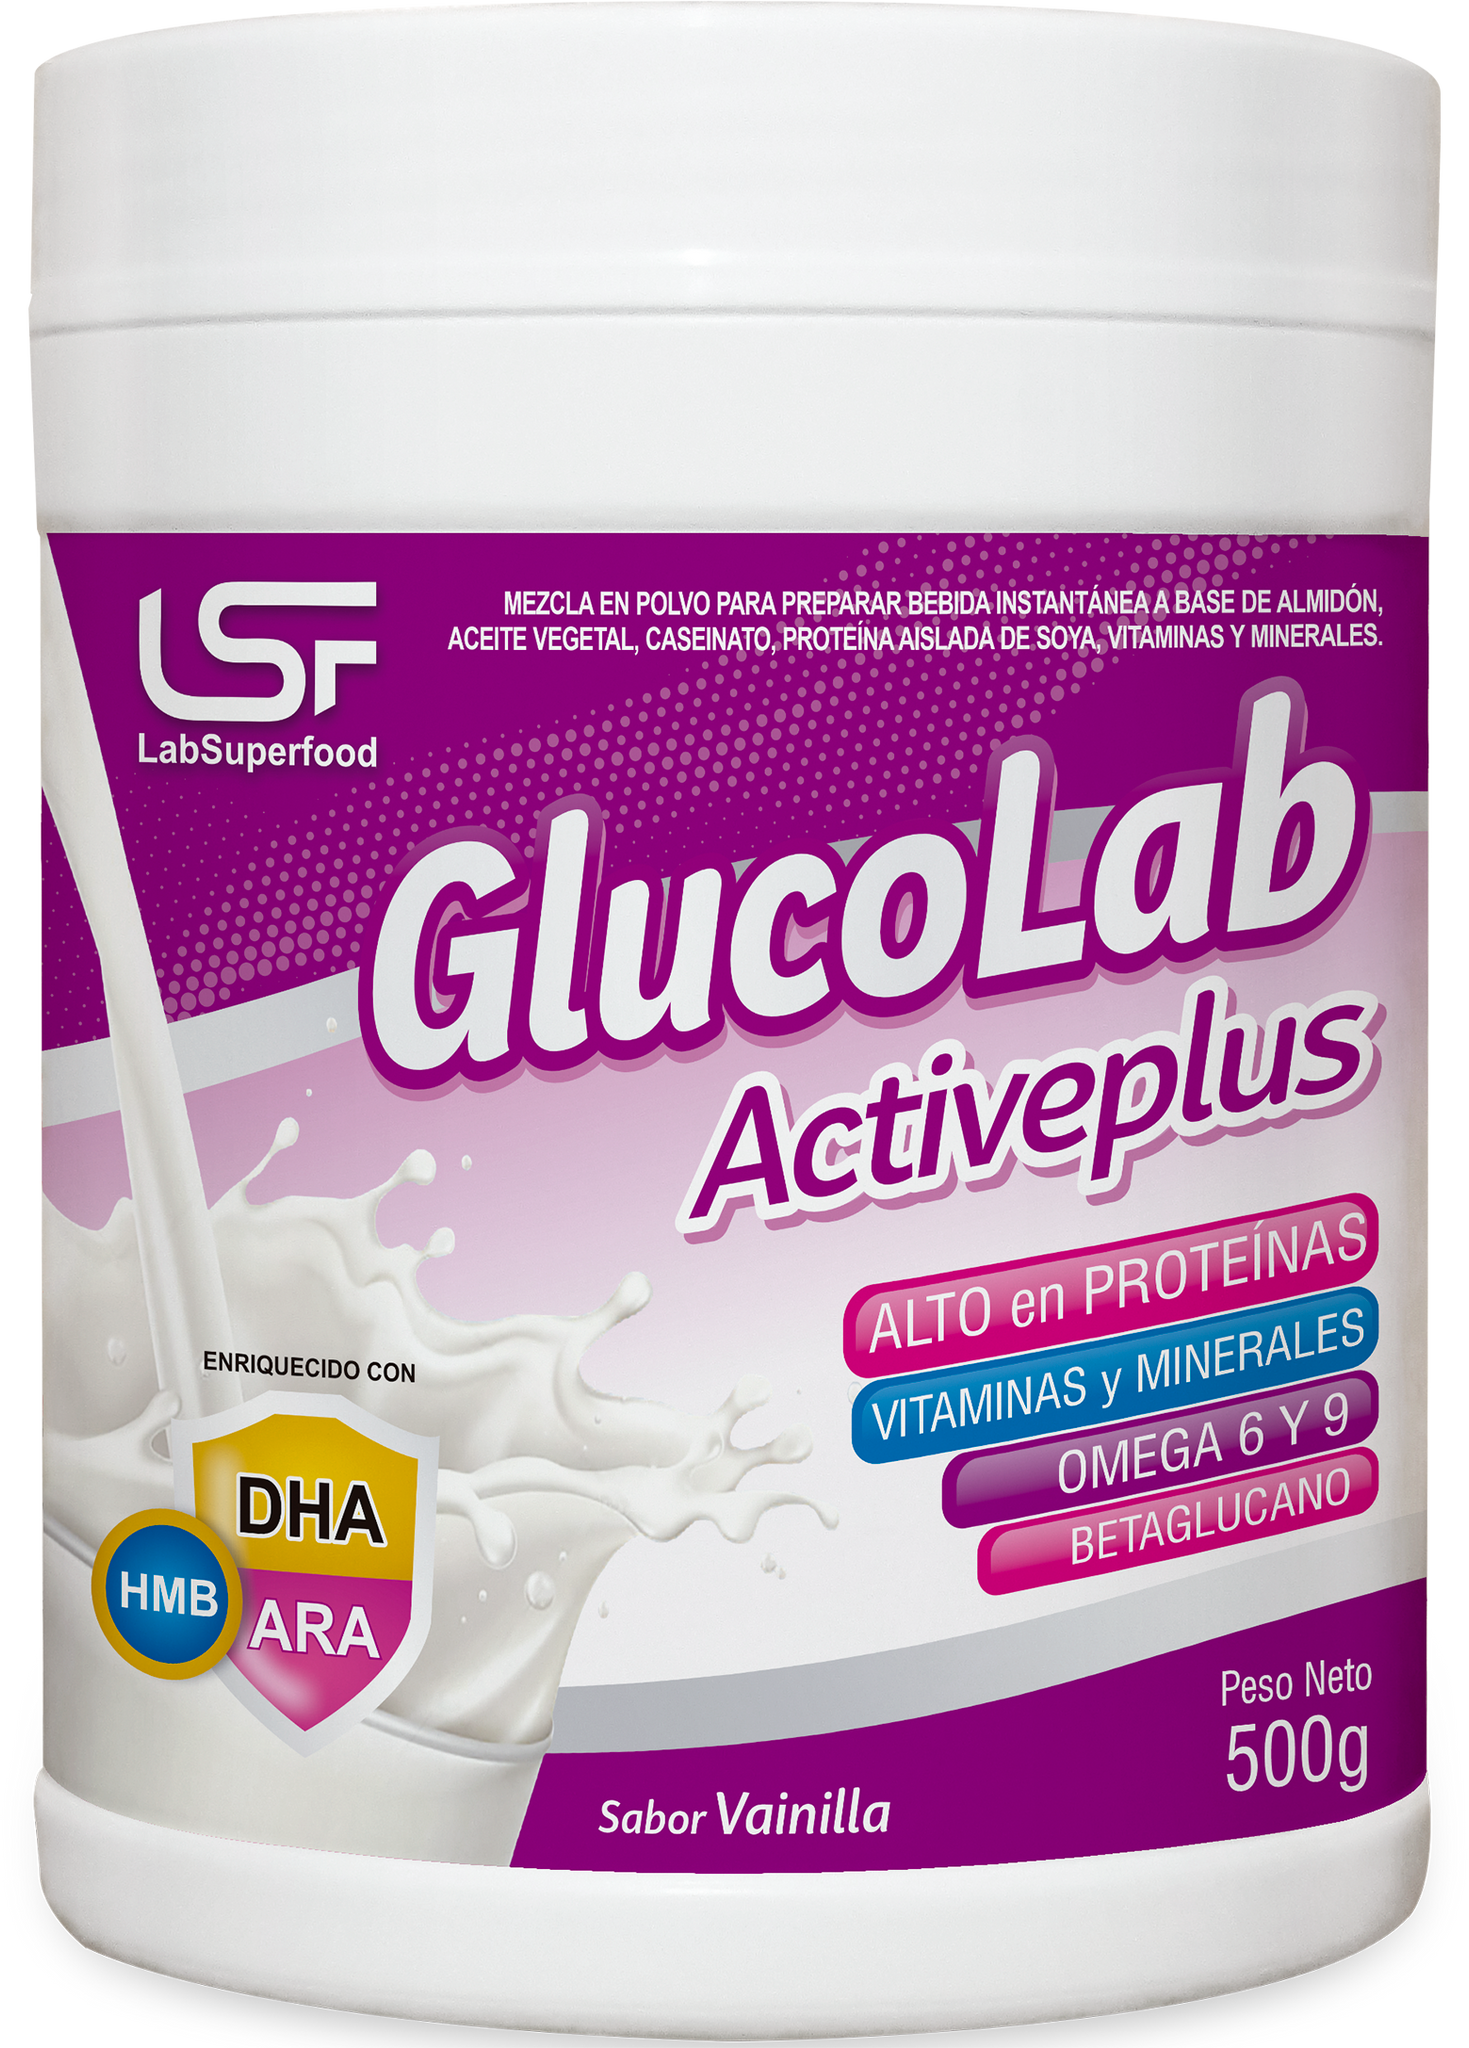 Glucolab Activeplus - Jar - 500g